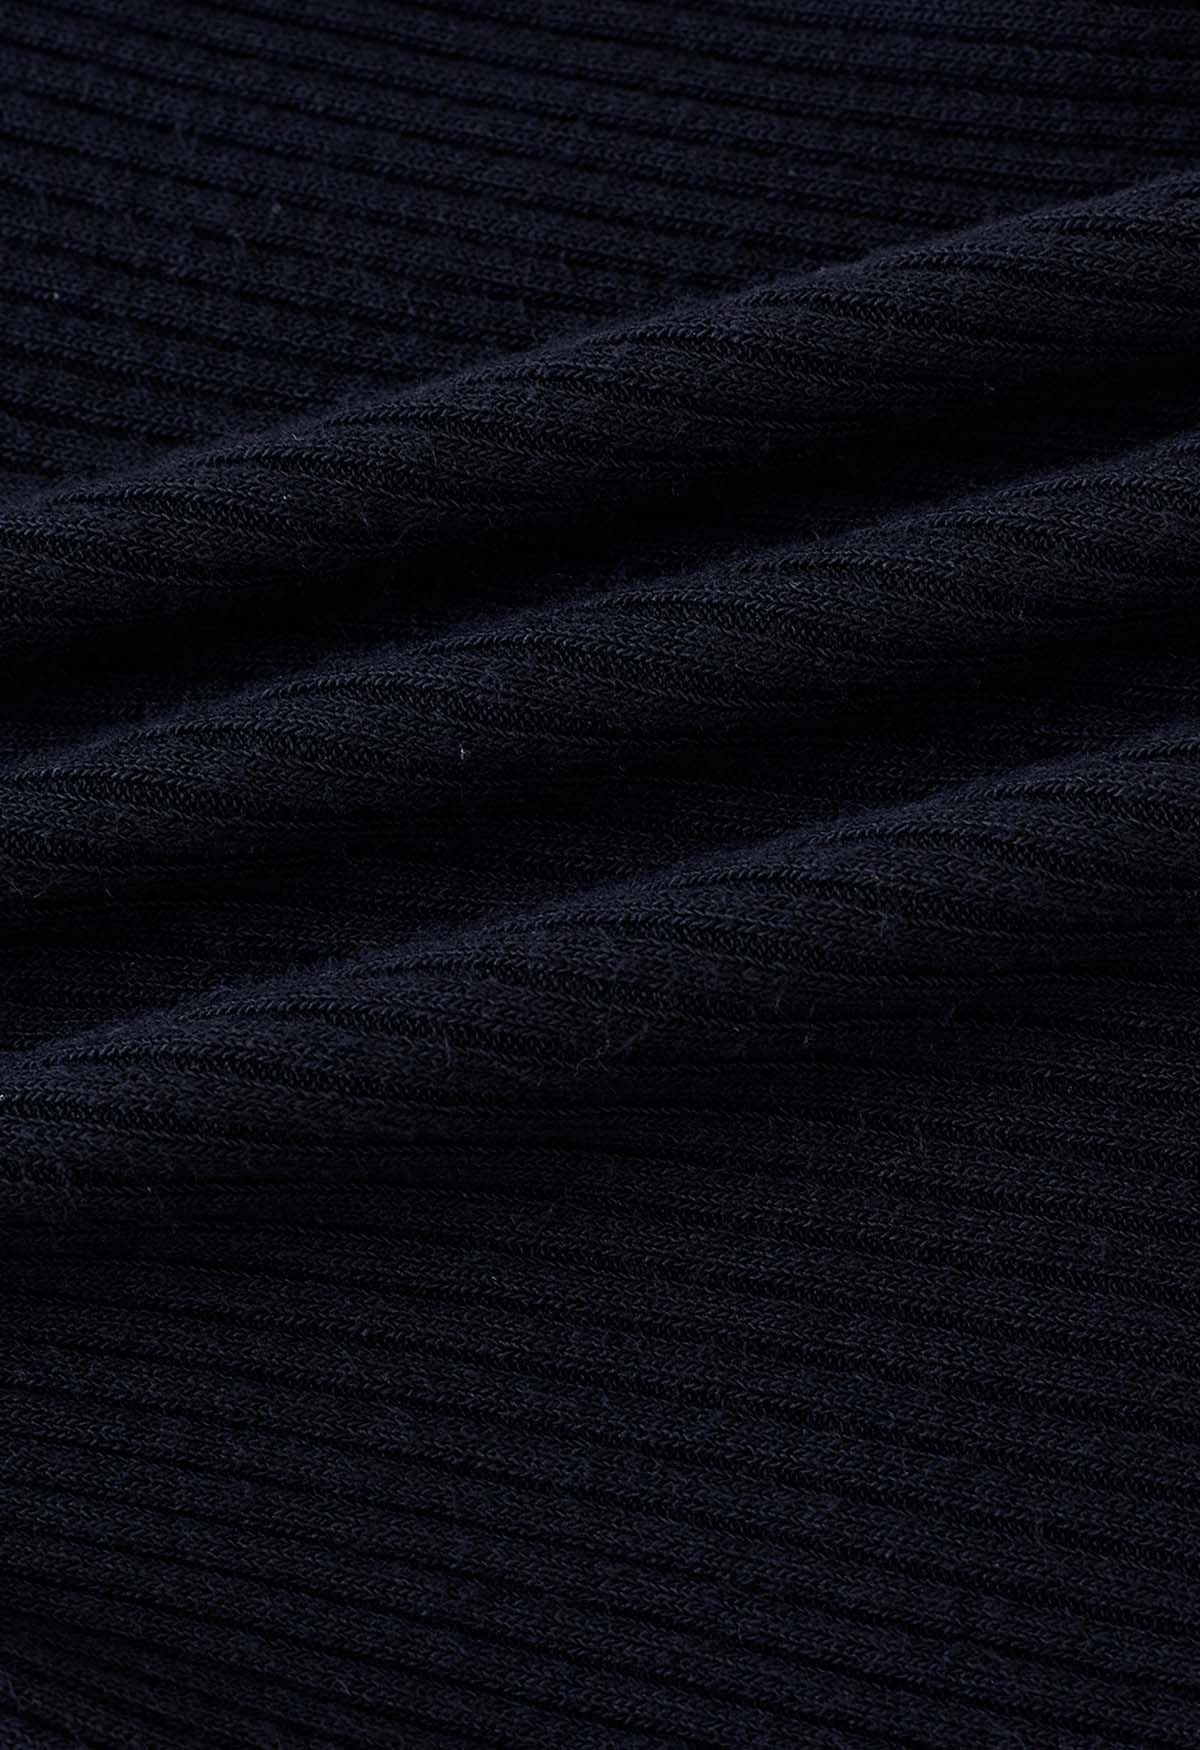 Square Neckline Ribbed Knit Top in Black